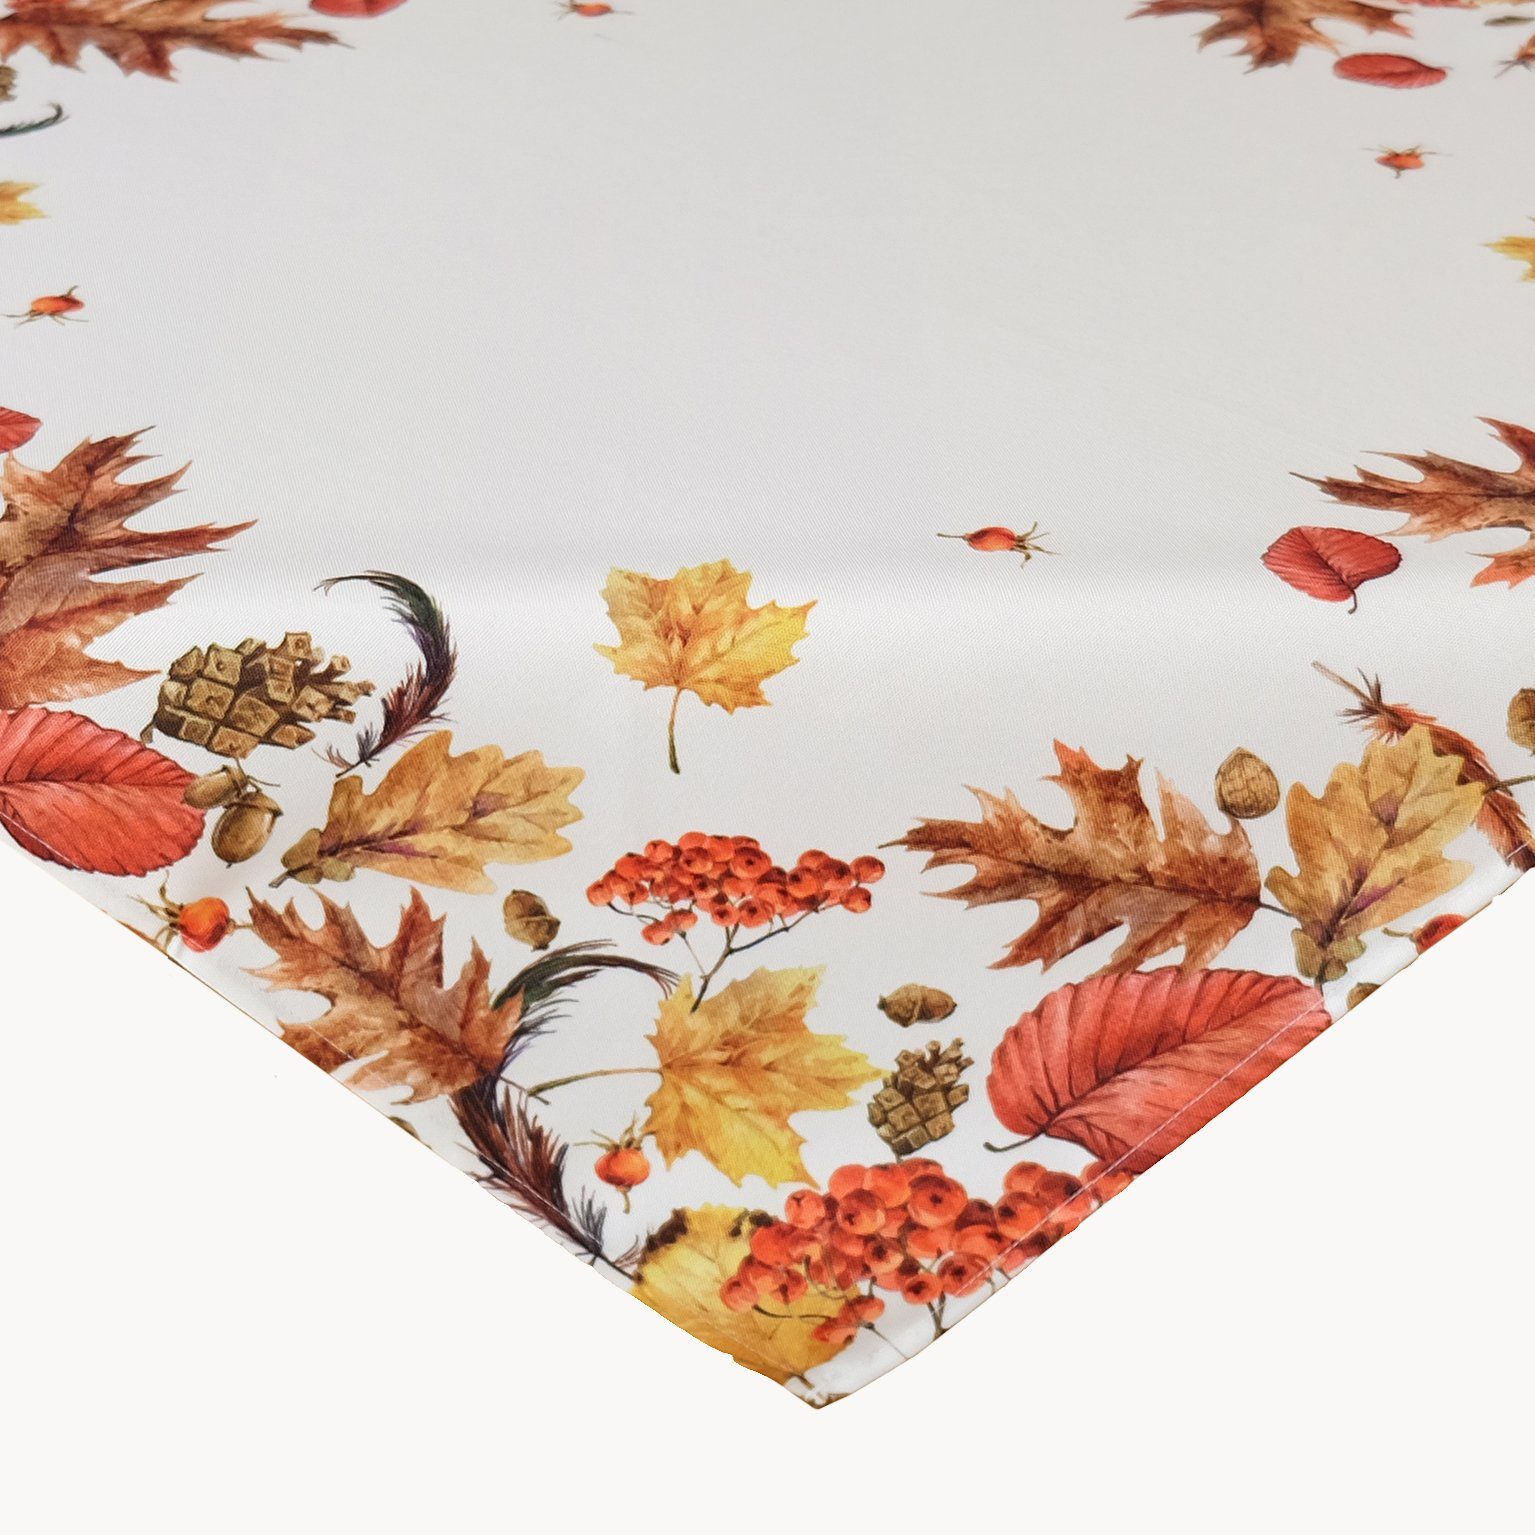 TextilDepot24 Tischdecke für den Herbst mit Blättern - Creme Weiß Beige  Bunt Bedruckt Tischdecke Herbst Tischdeko, bedruckt